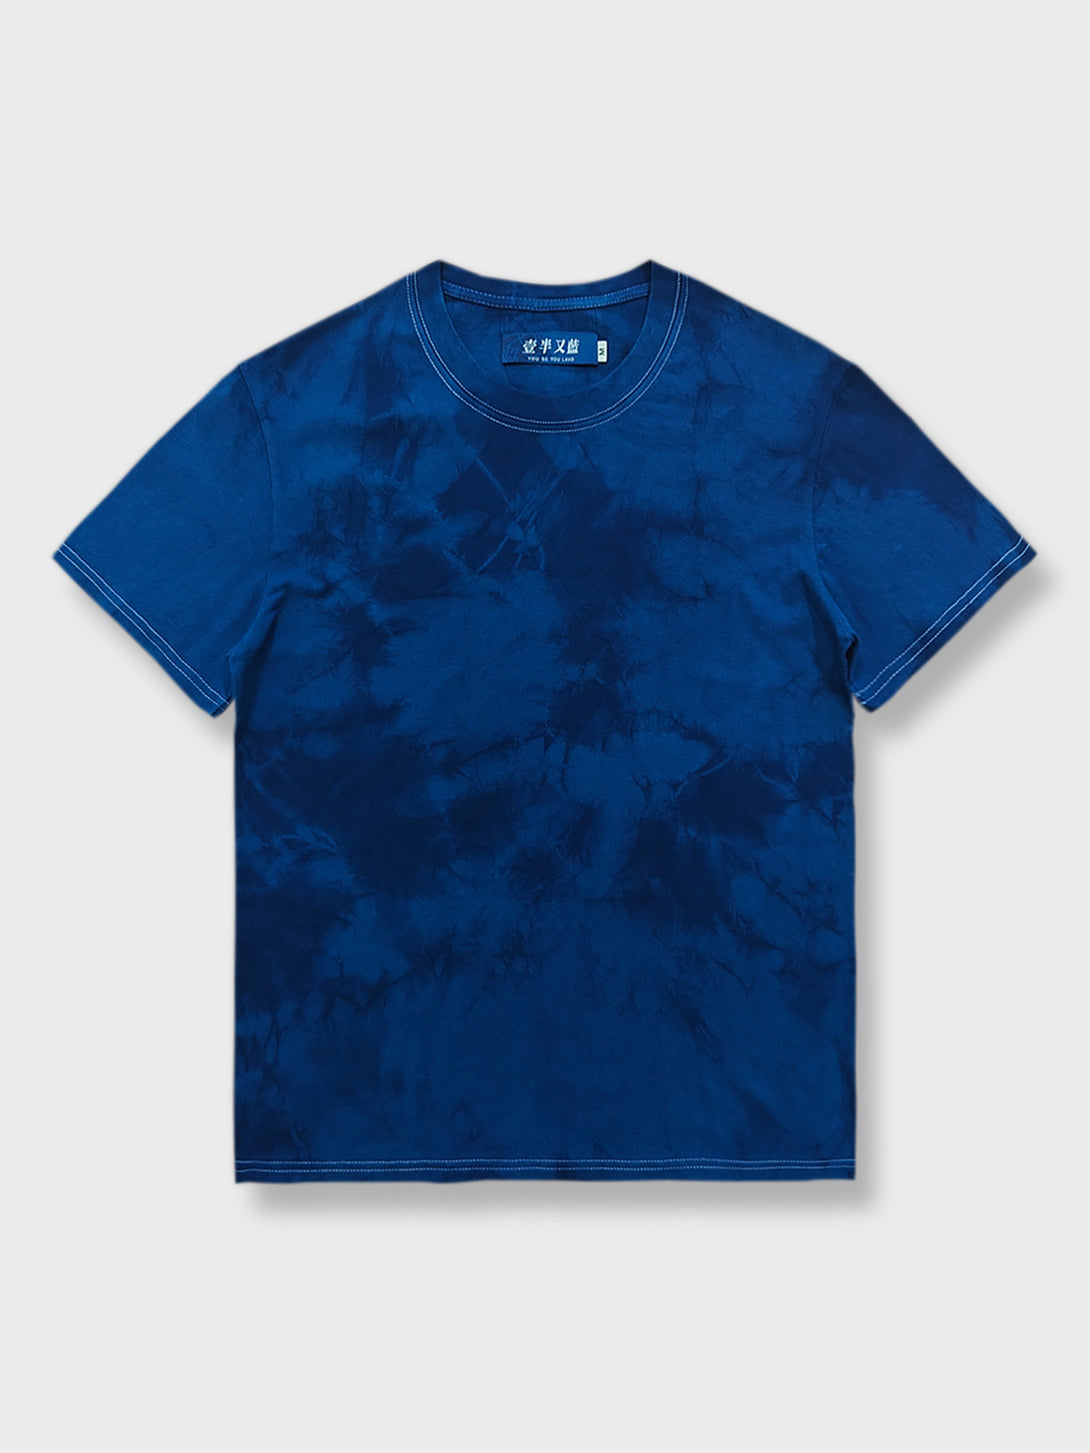 植物藍染氷紋絞り染めを施したユニークなTシャツ。